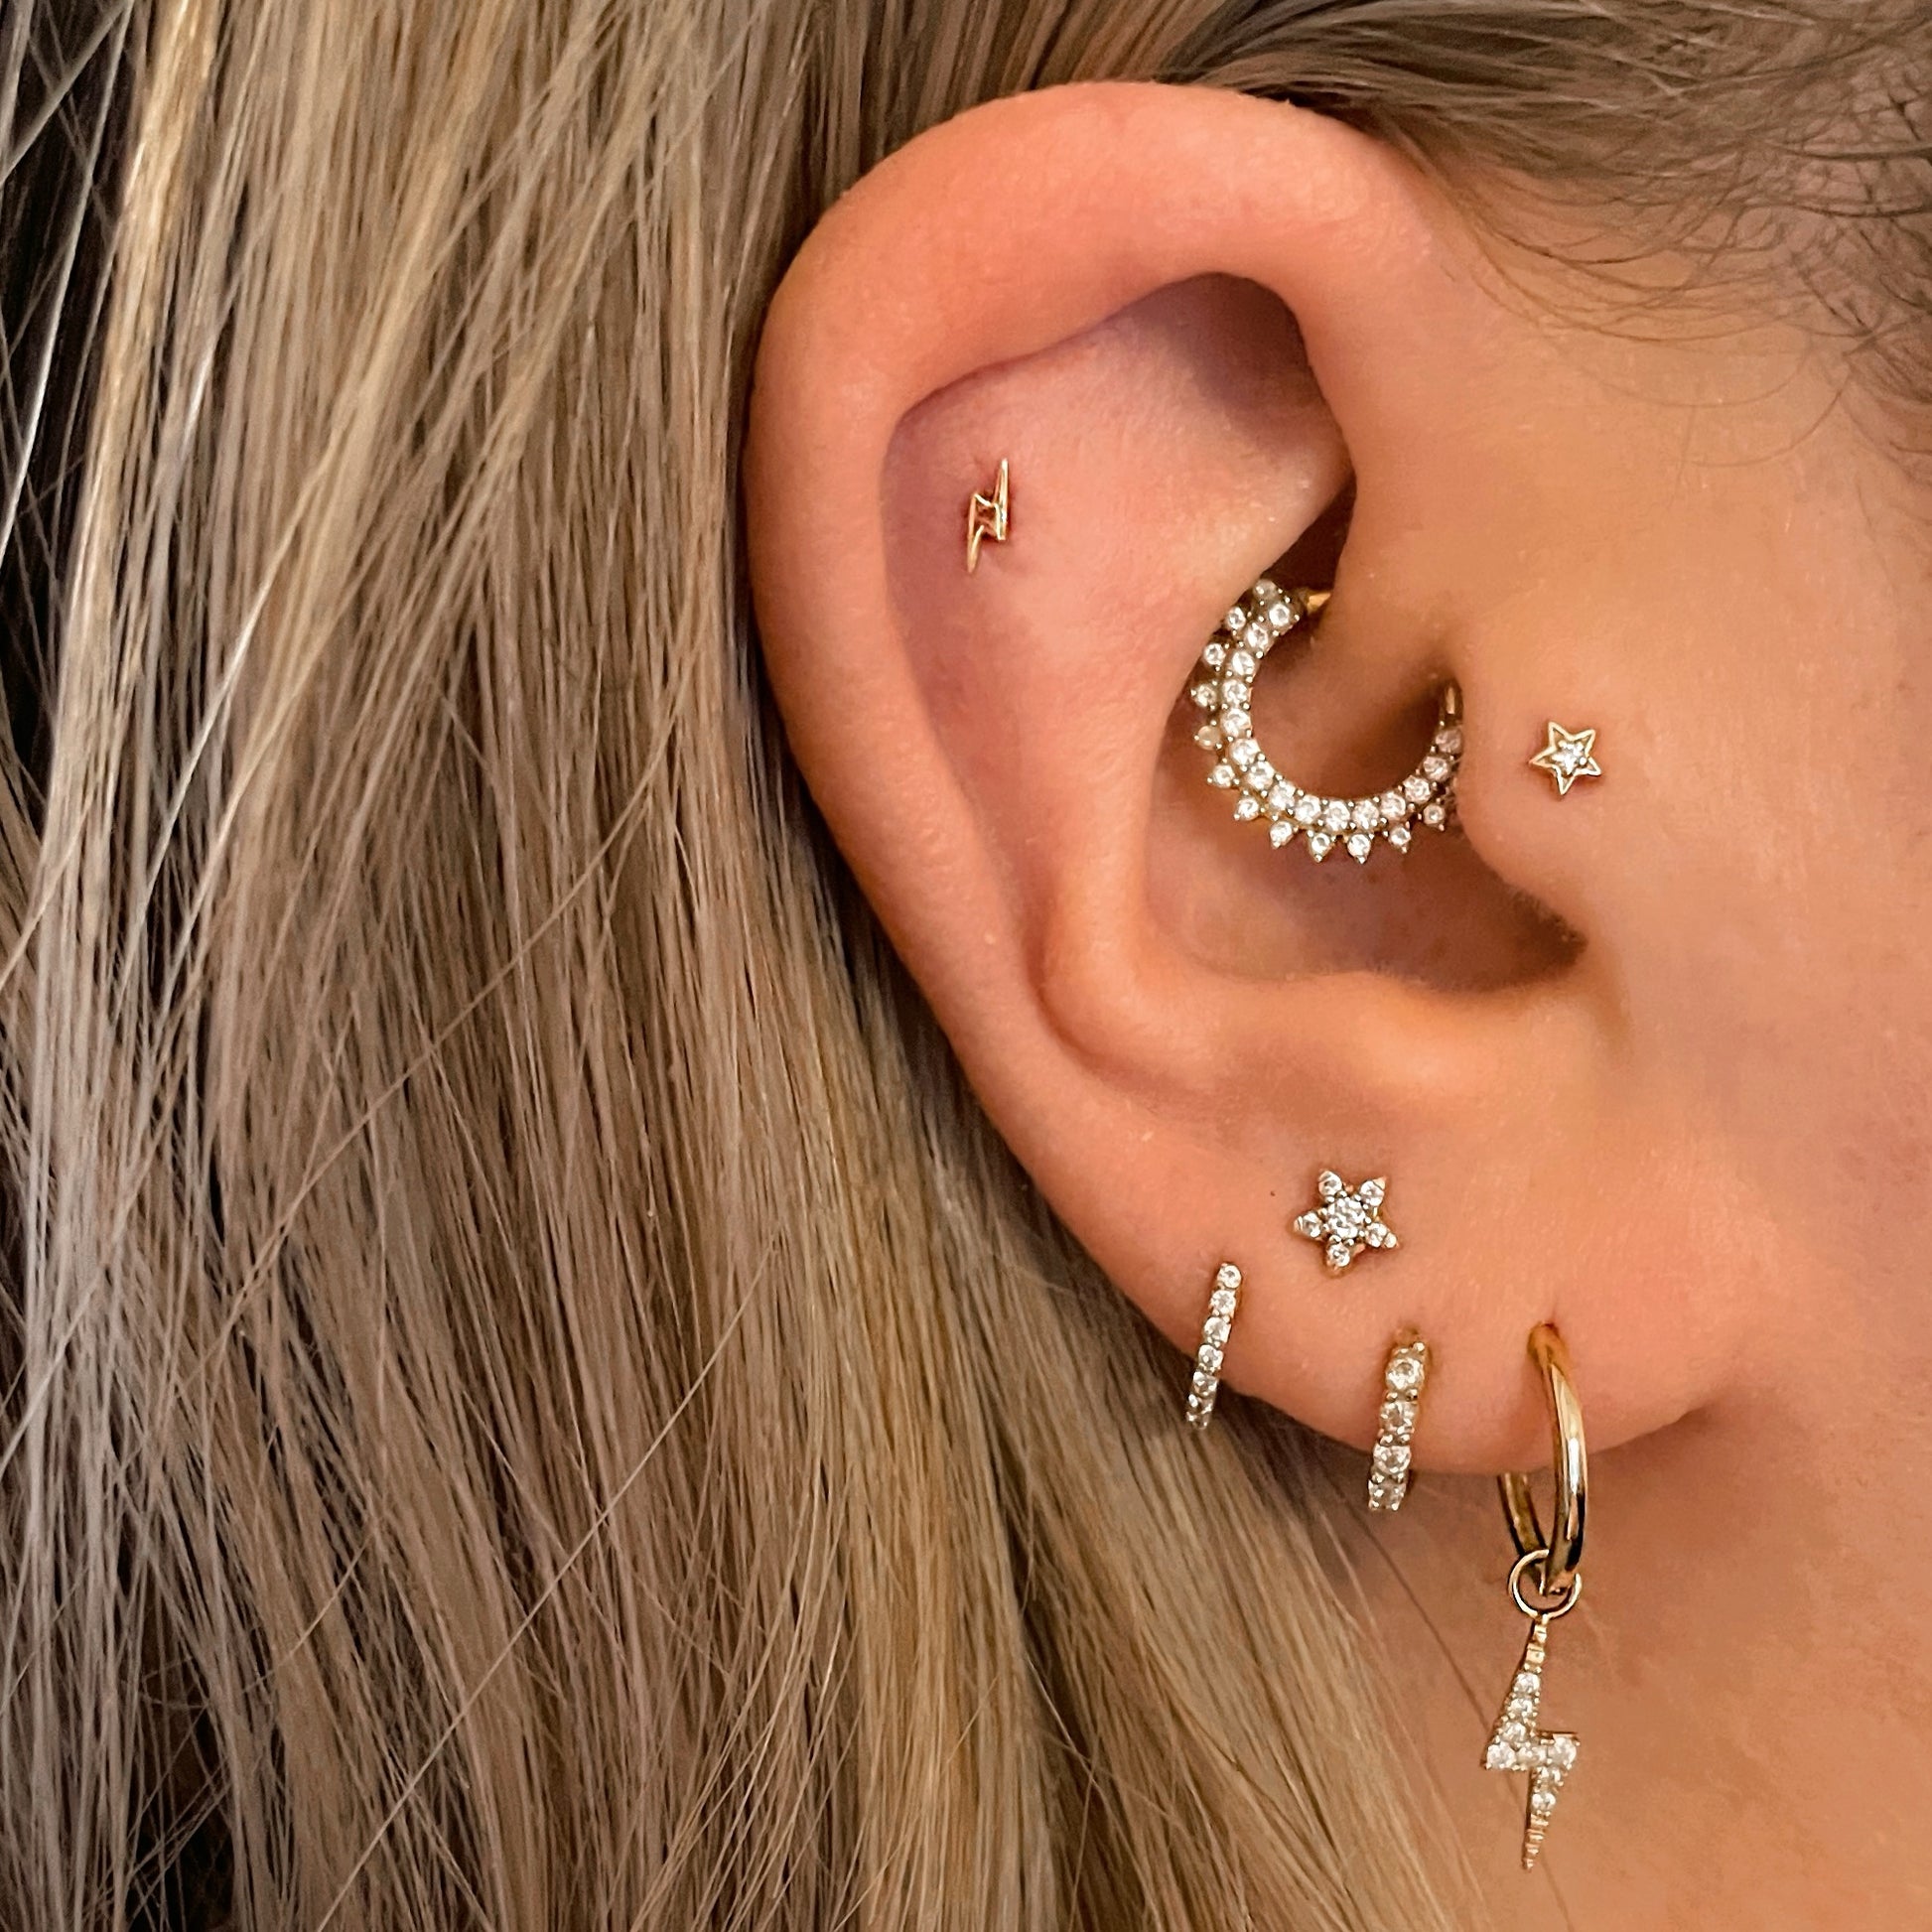 Flat Helix Jewellery  Earrings for Flat Helix Piercings – Laura Bond